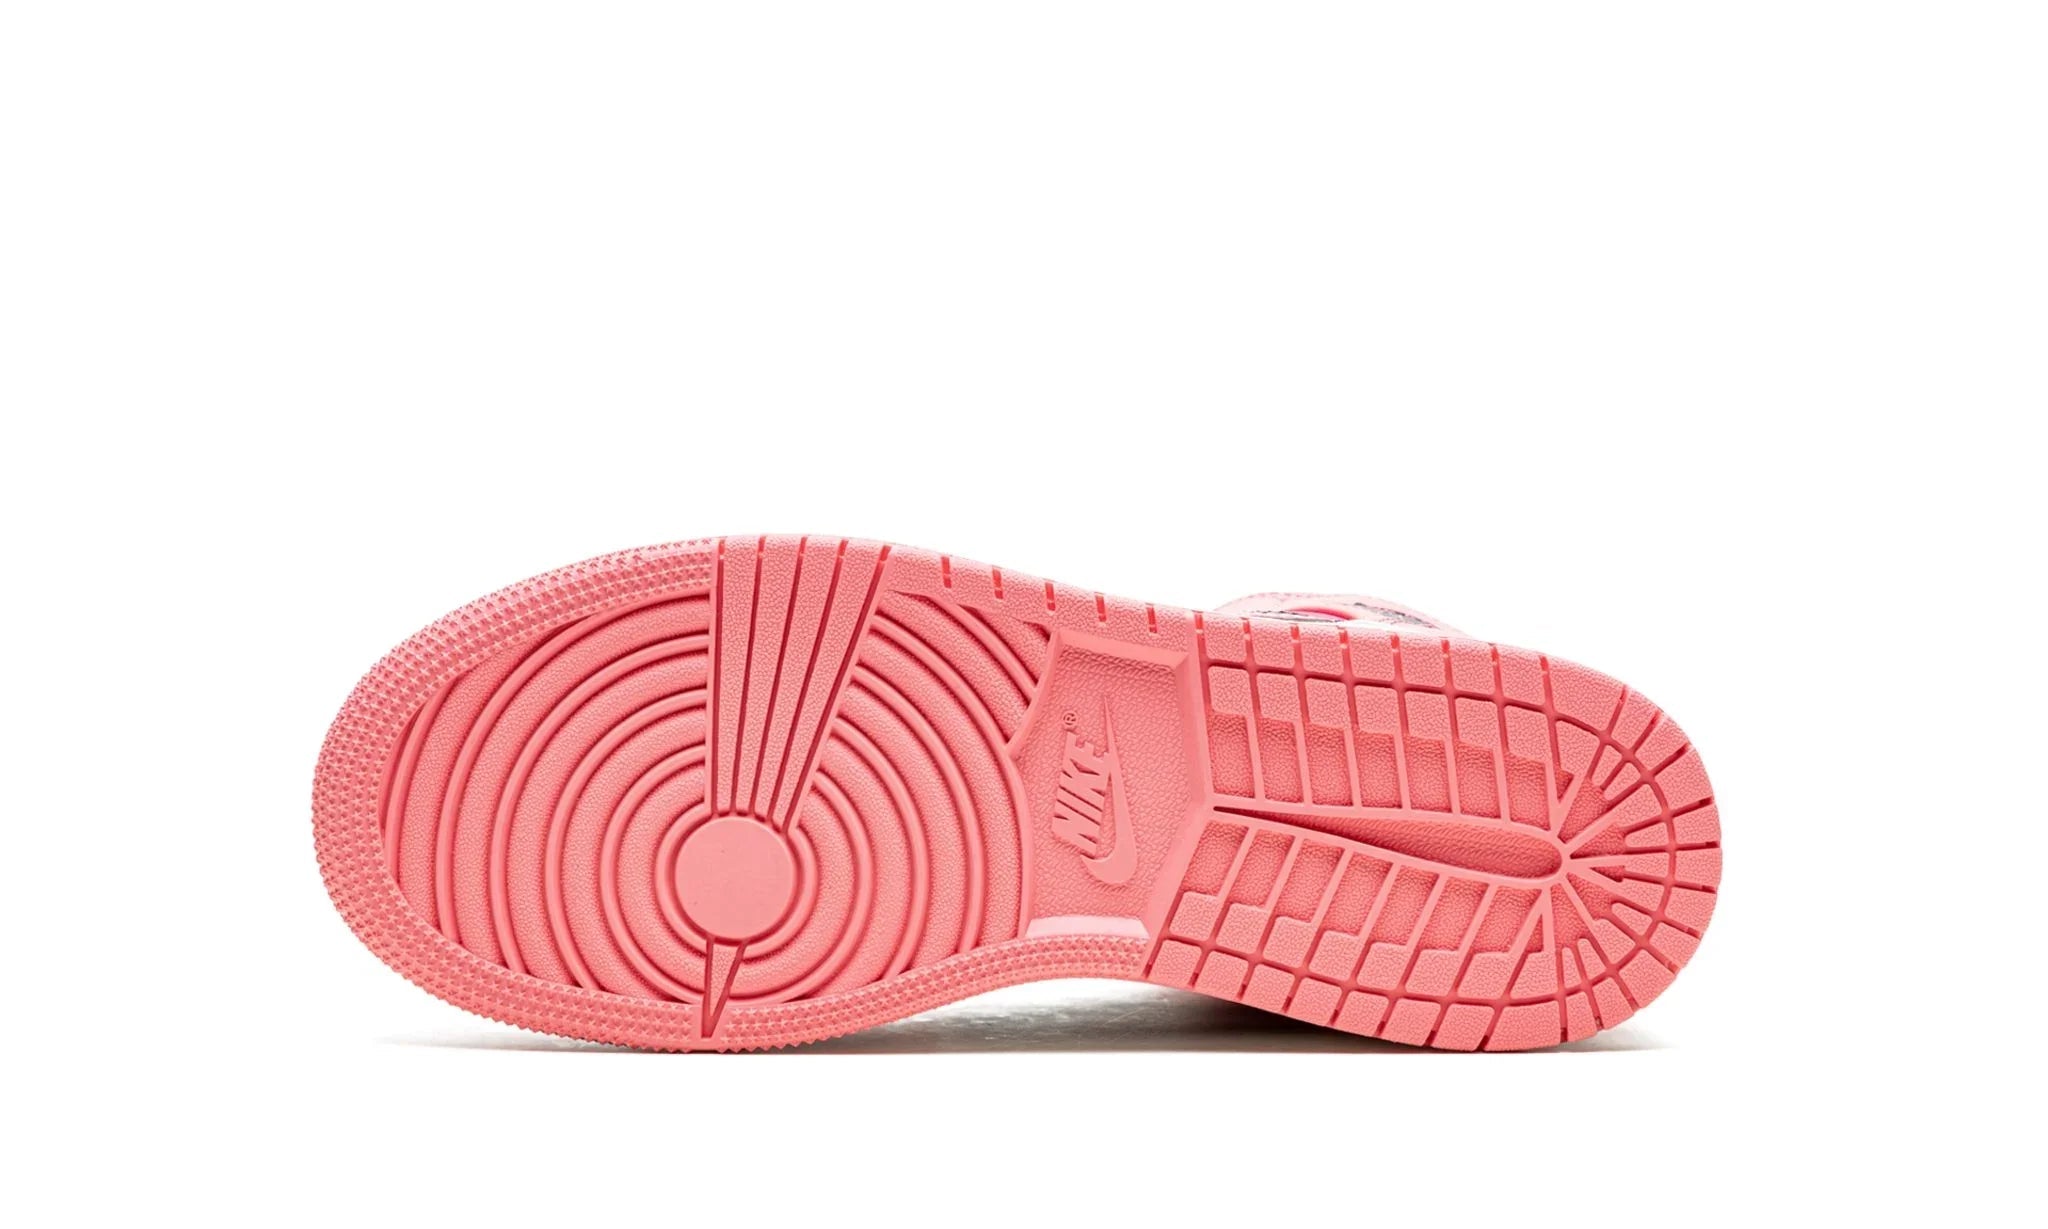 Jordan 1 mid " Coral Chalk " - 554725-662 - Sneakers